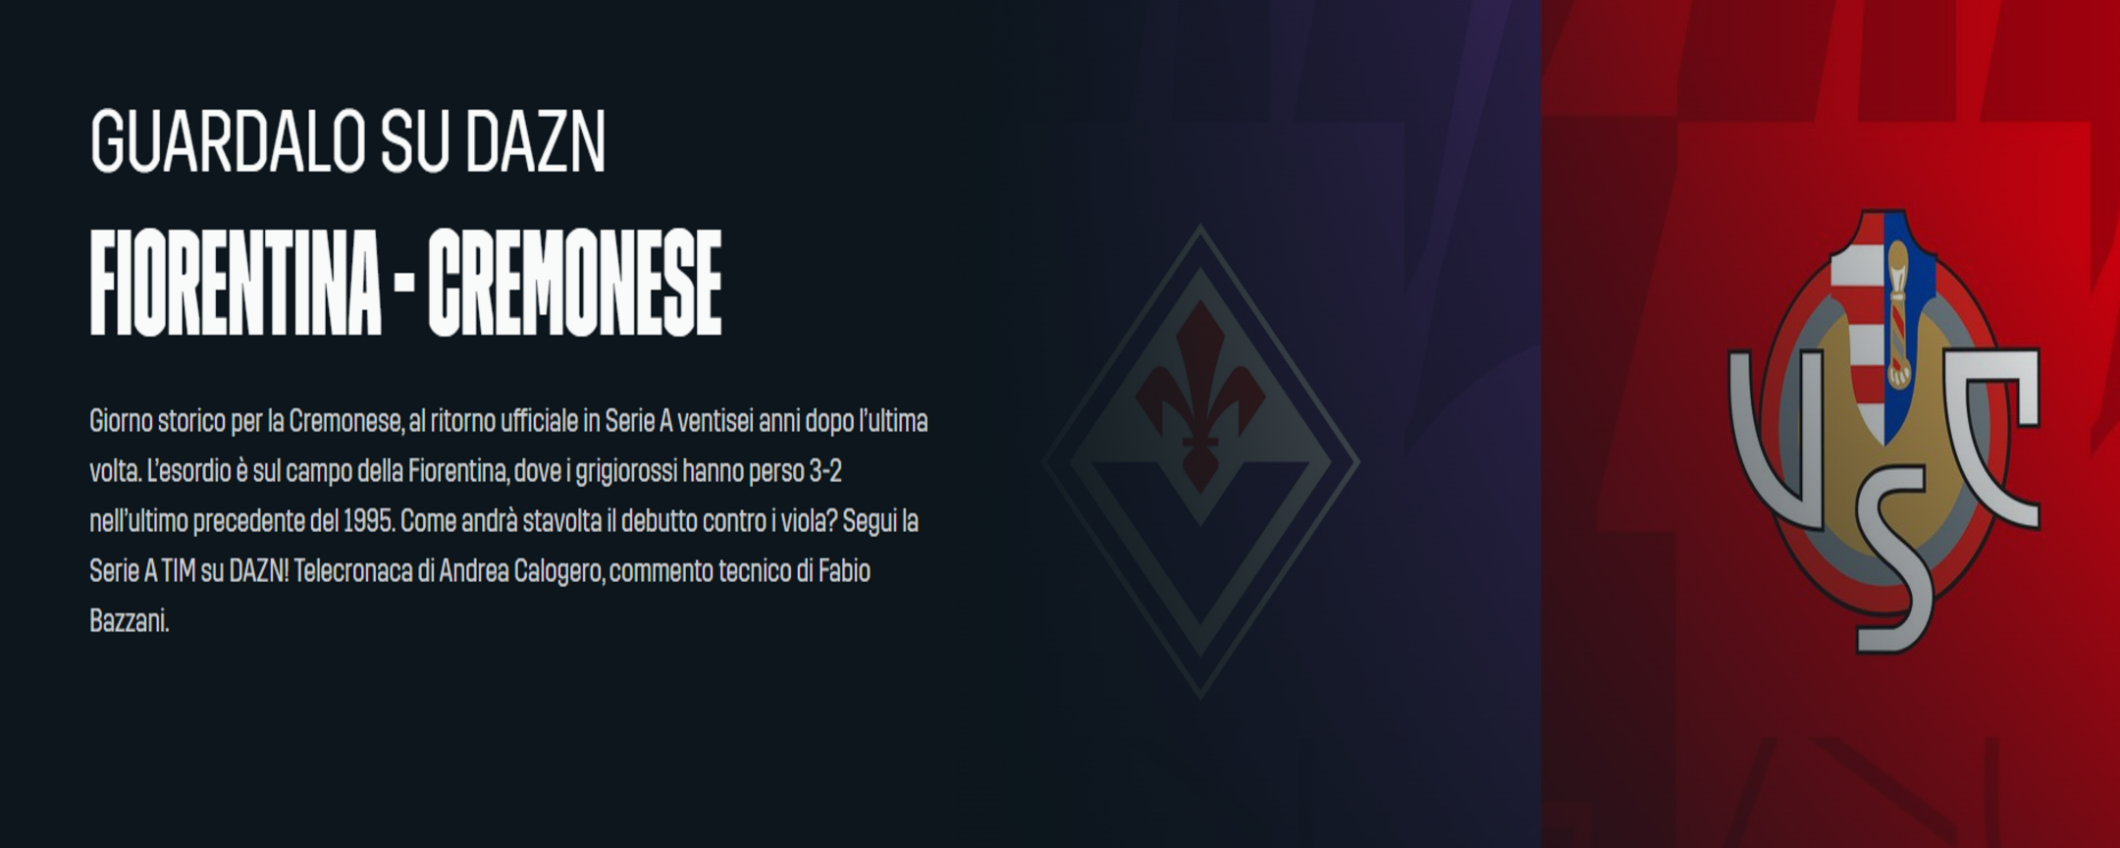 Fiorentina-Cremonese (Serie A): come vederla in streaming